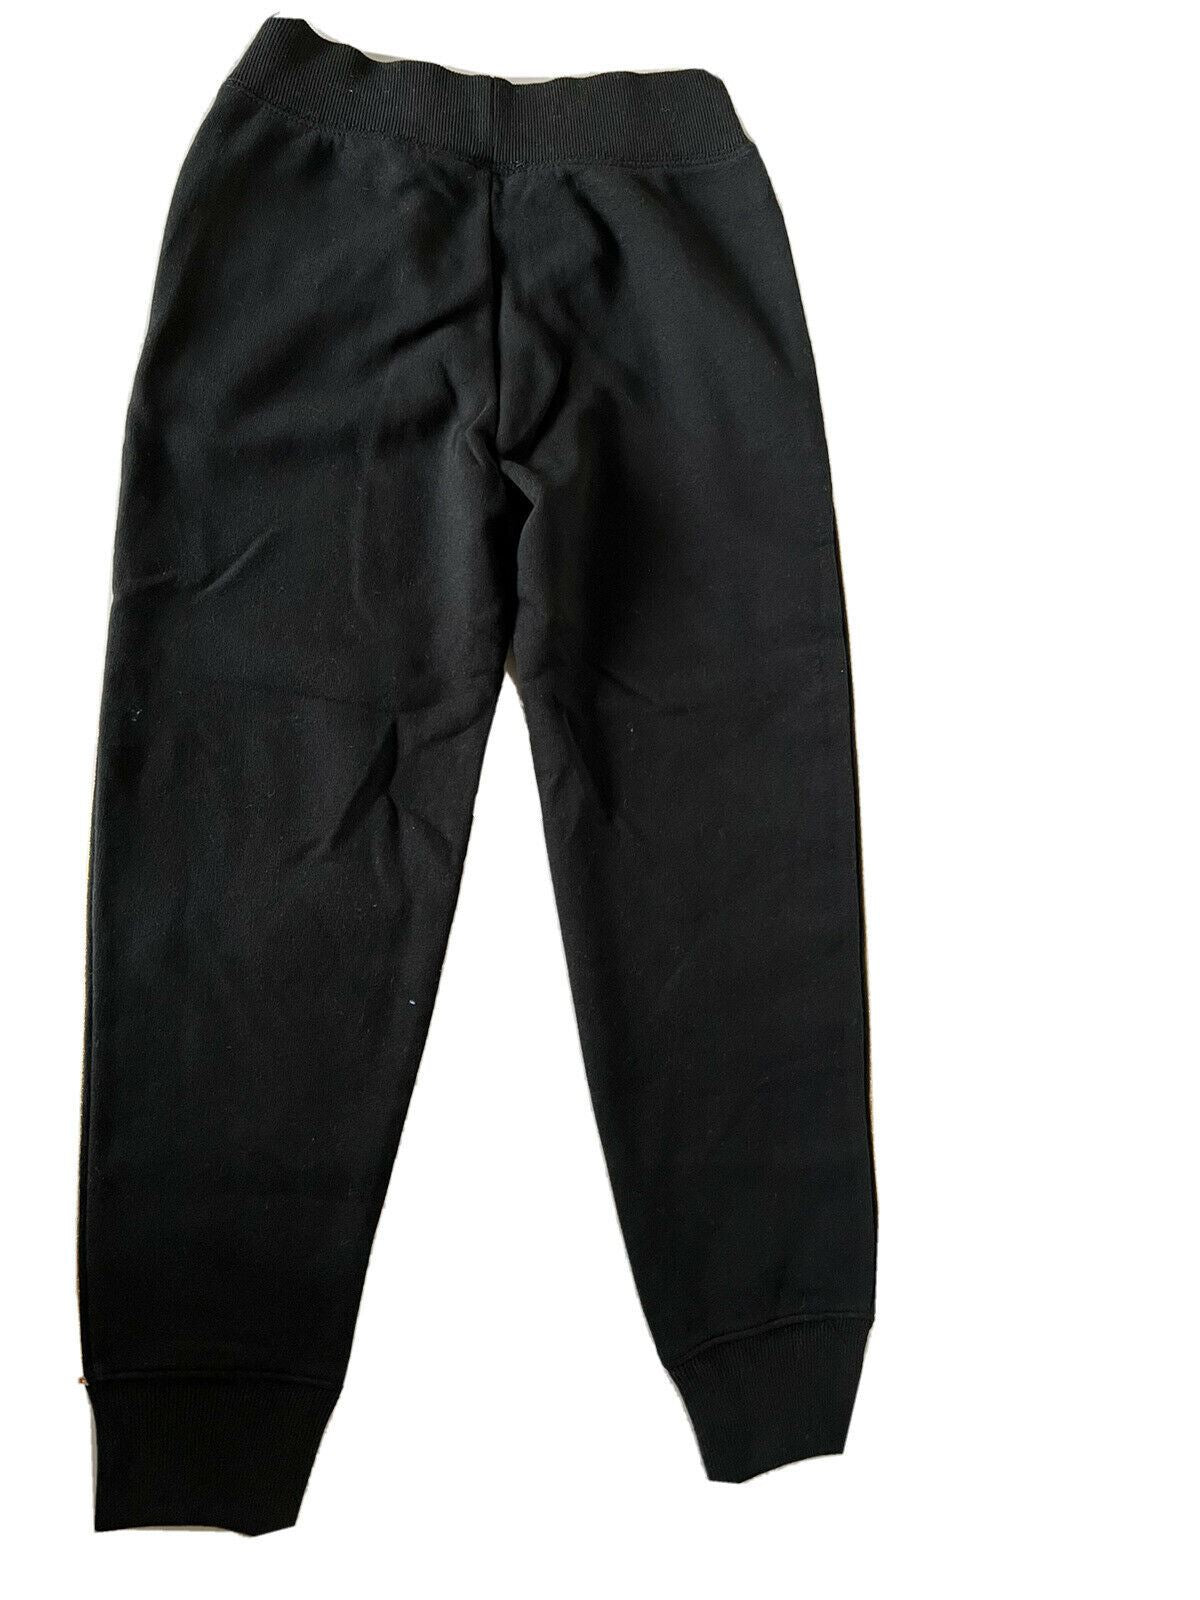 Neu mit Etikett: Schwarze Hose für Jungen von Polo Ralph Lauren, Größe S (7)